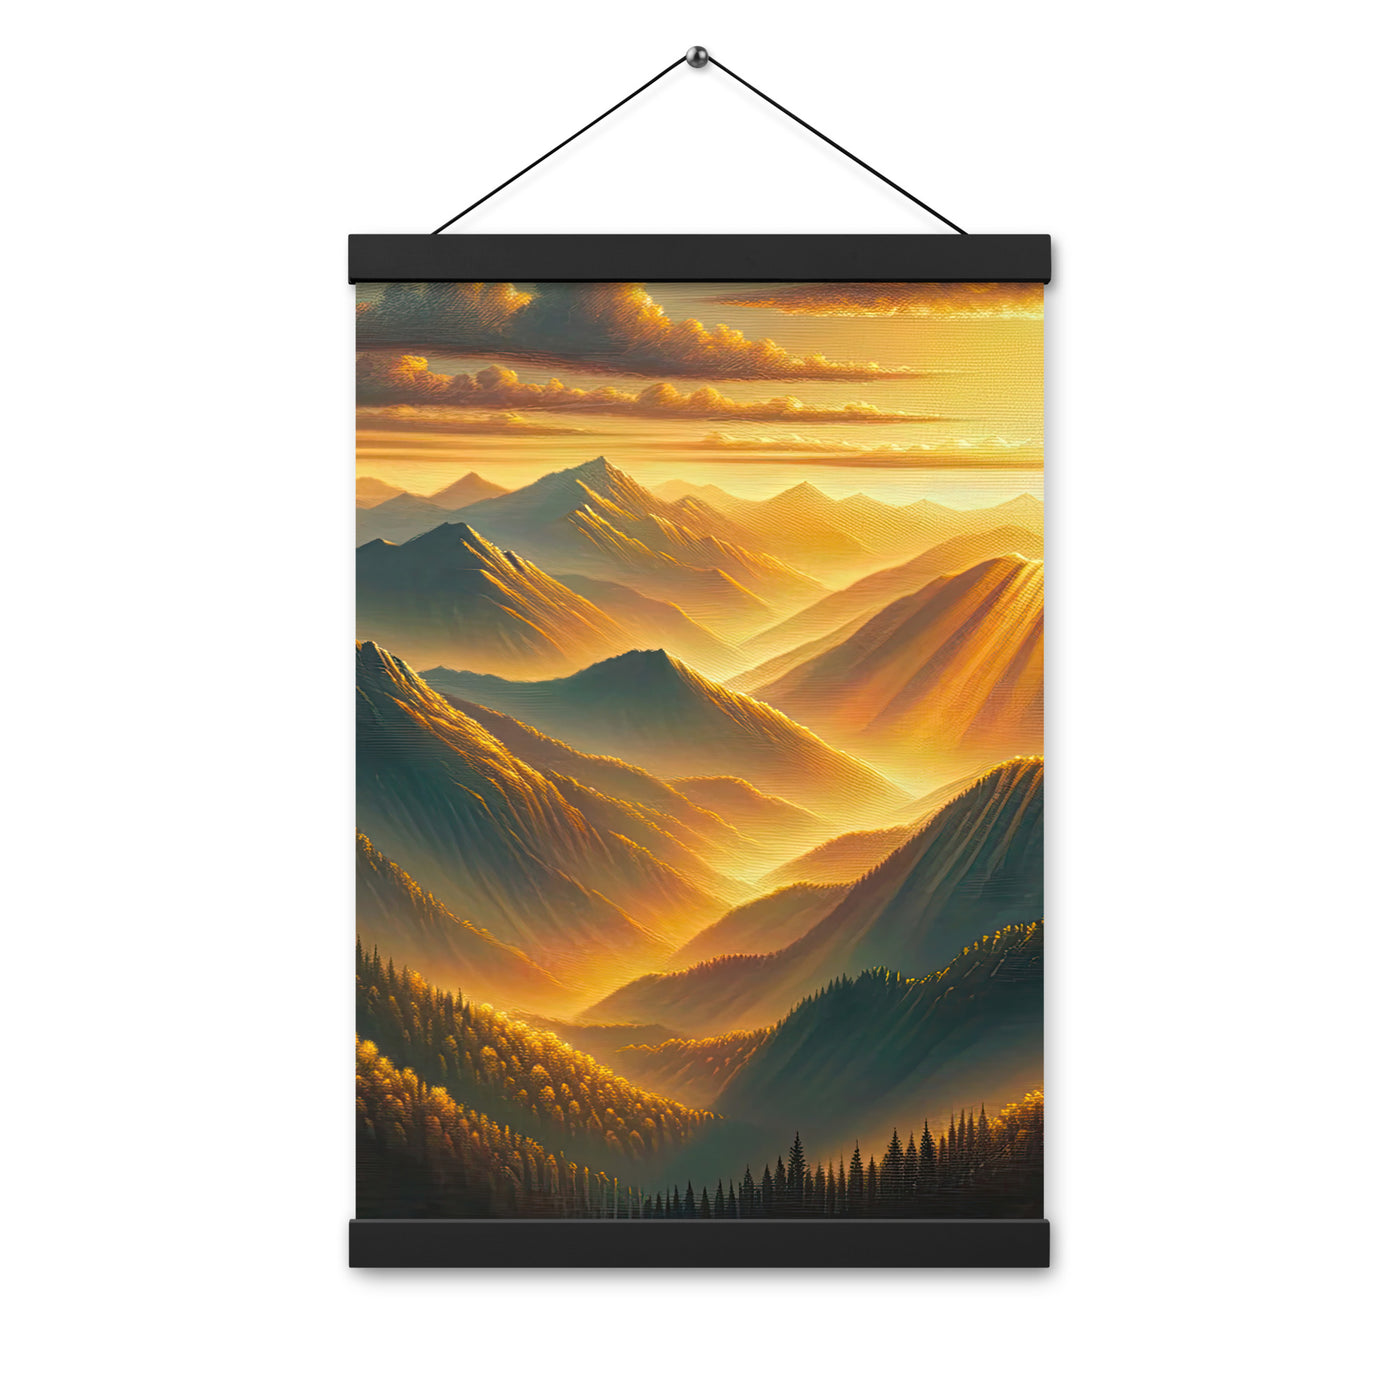 Ölgemälde der Berge in der goldenen Stunde, Sonnenuntergang über warmer Landschaft - Premium Poster mit Aufhängung berge xxx yyy zzz 30.5 x 45.7 cm